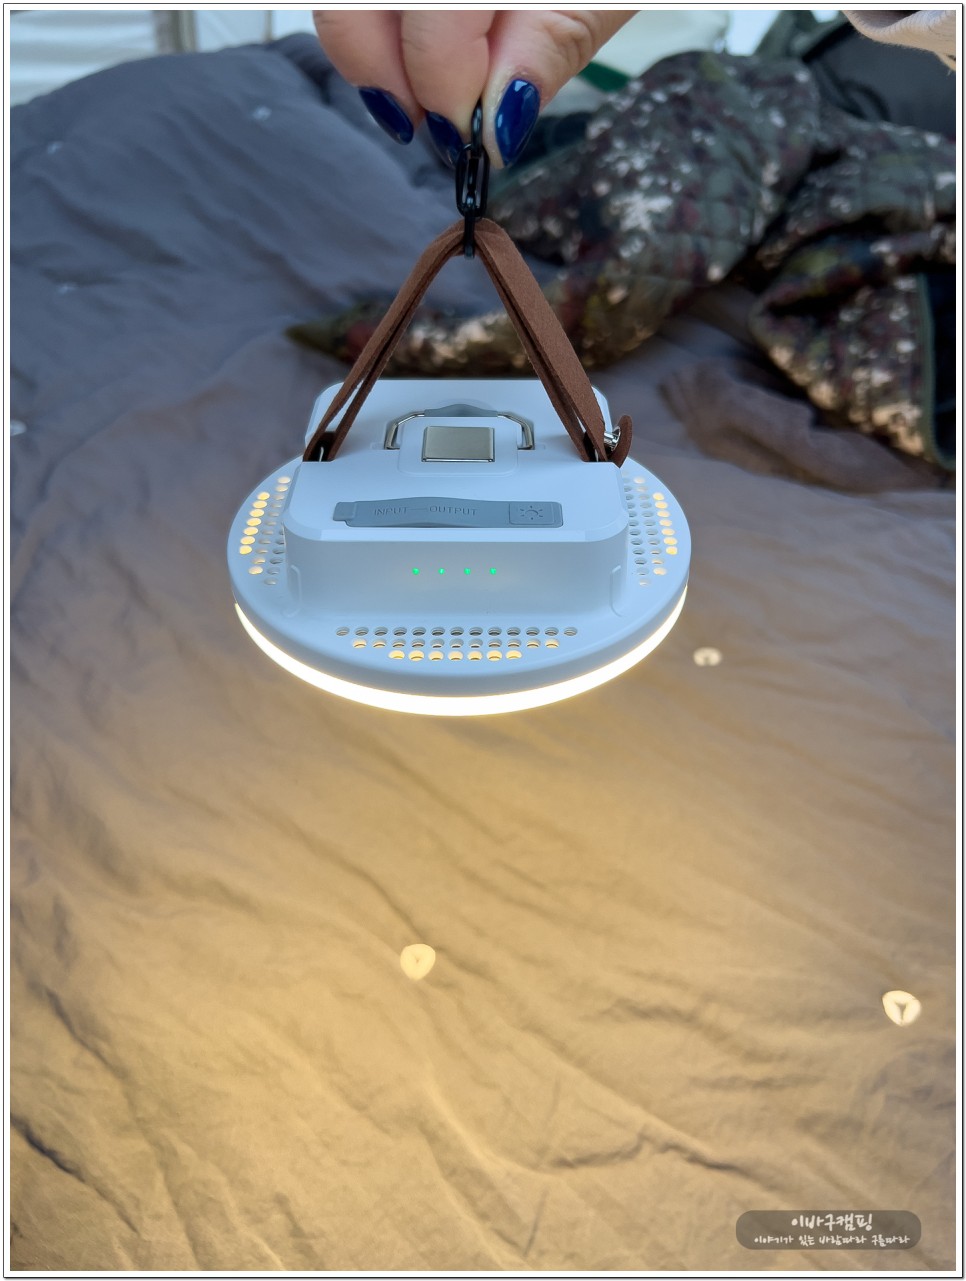 캠핑랜턴 추천 간편하고 밝은 엘라보르 충전식 LED 감성캠핑조명